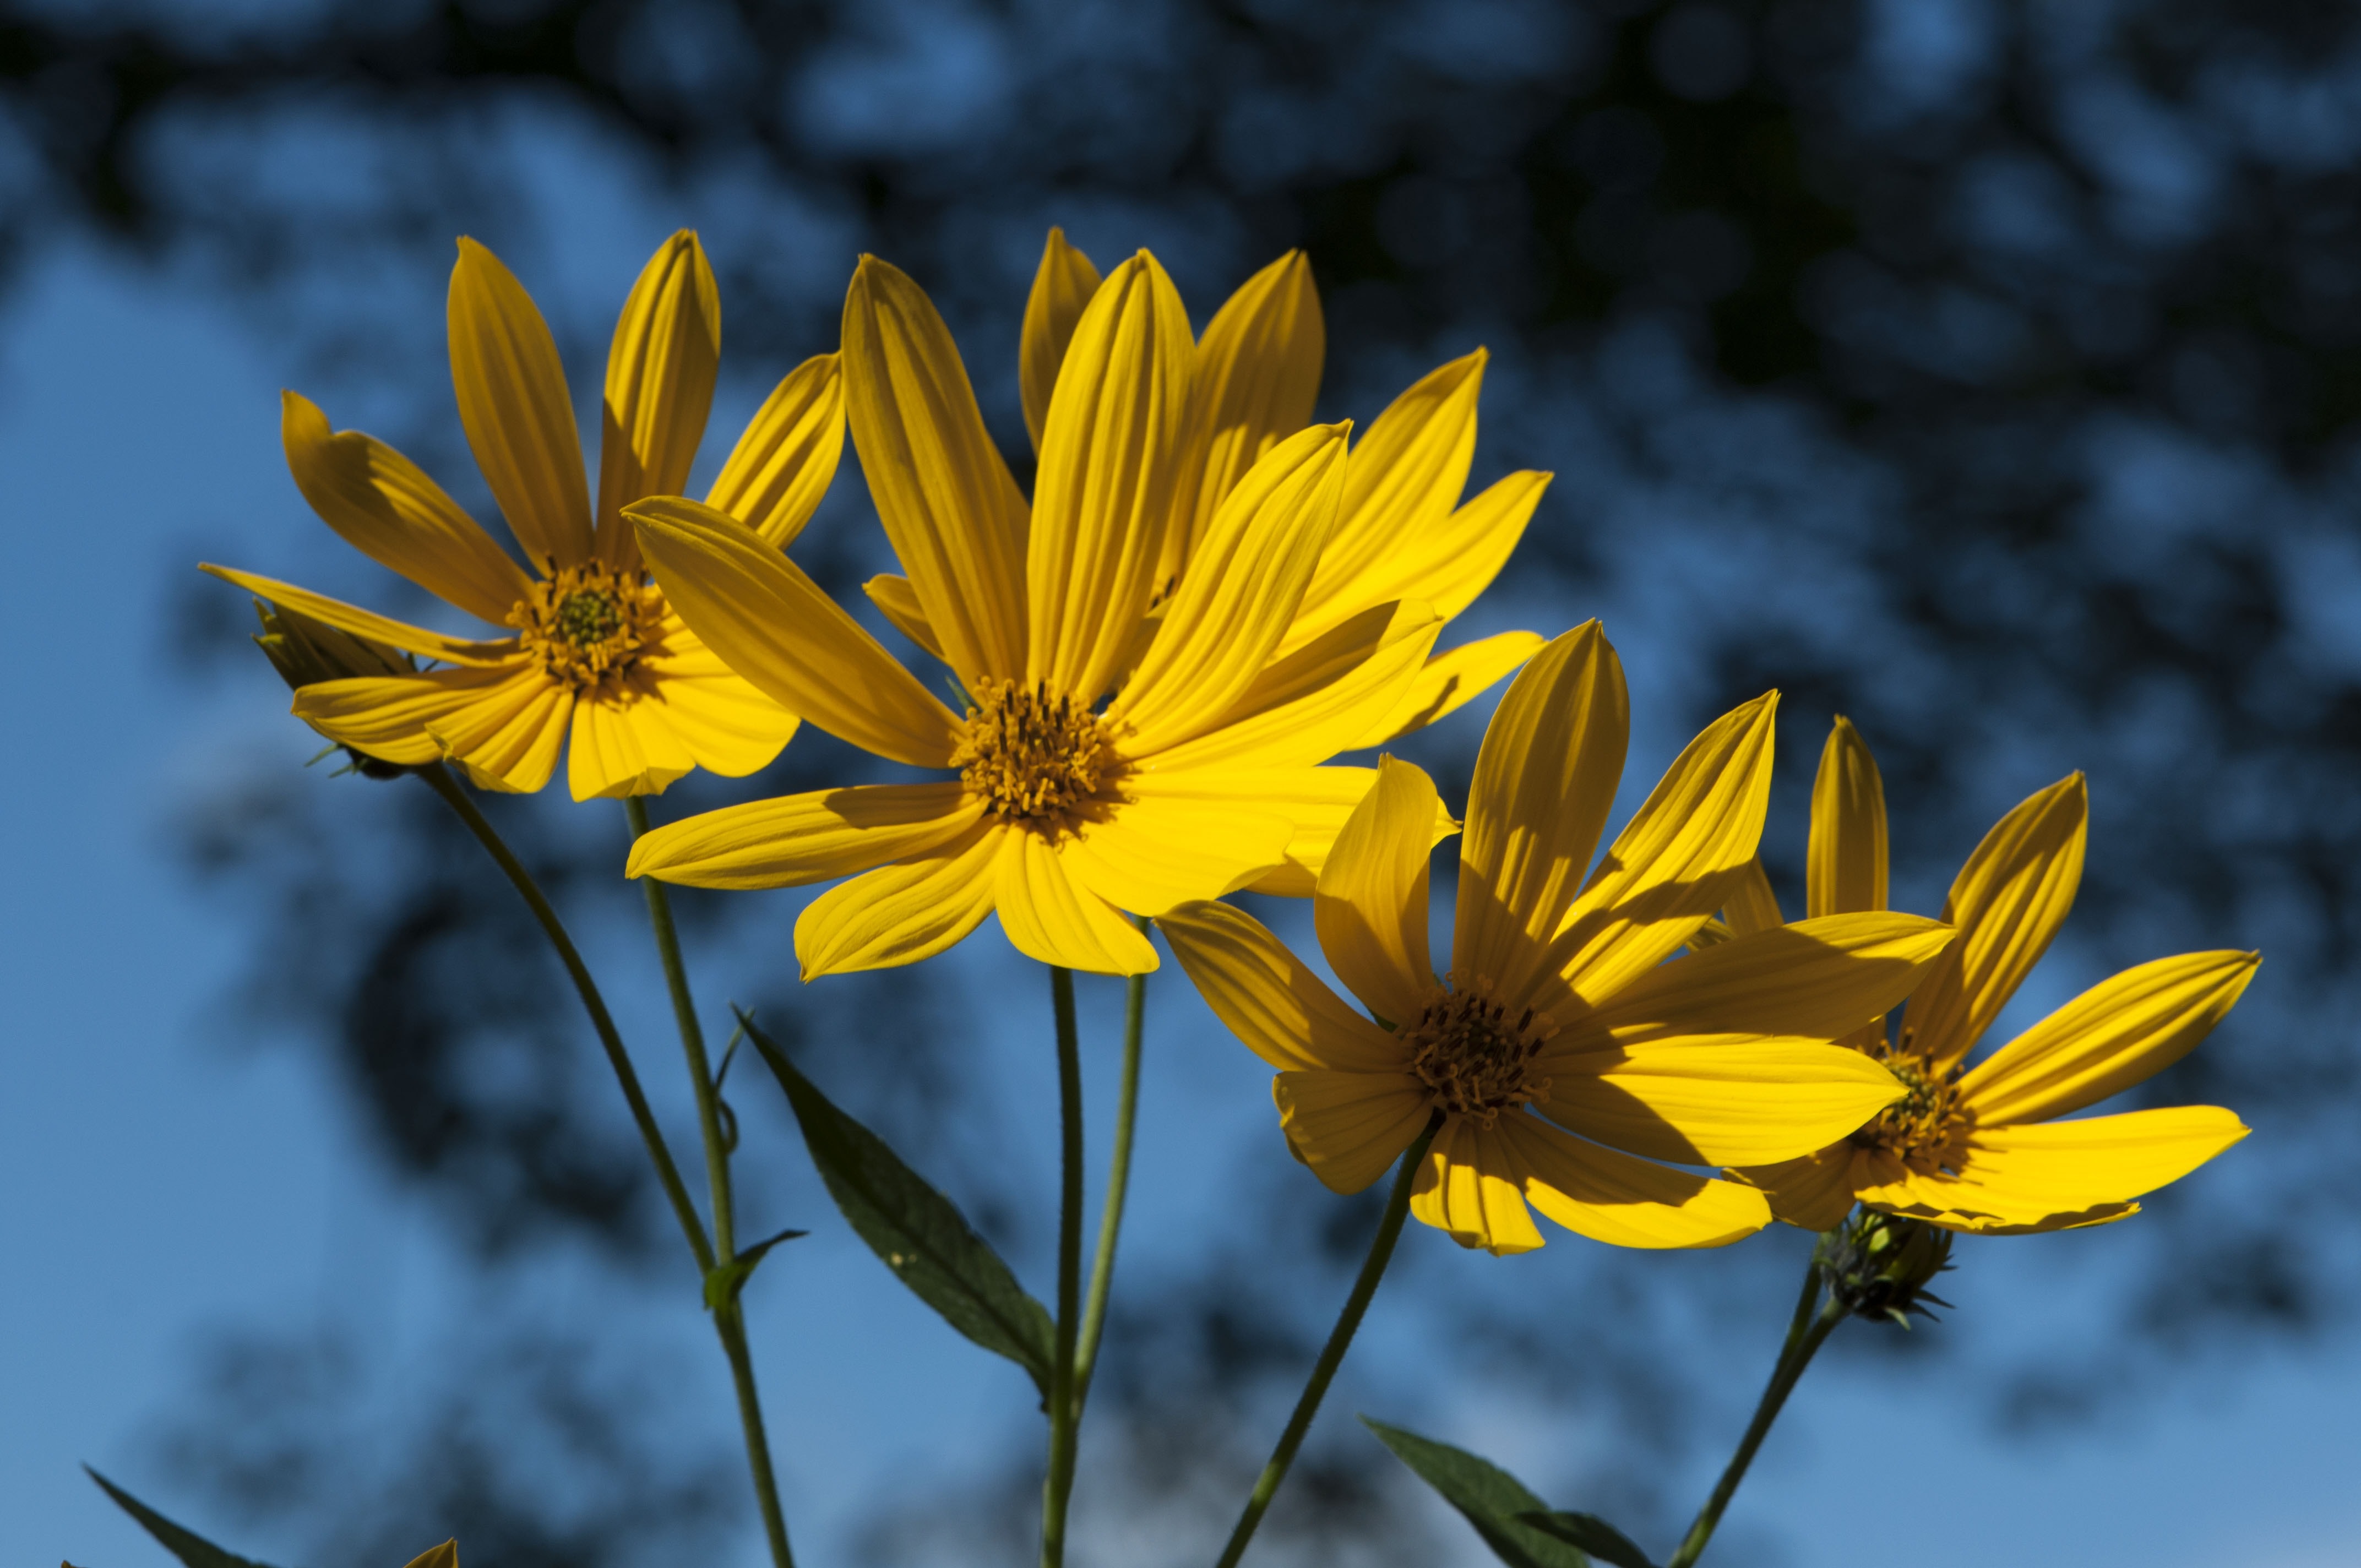 4 yellow daisies